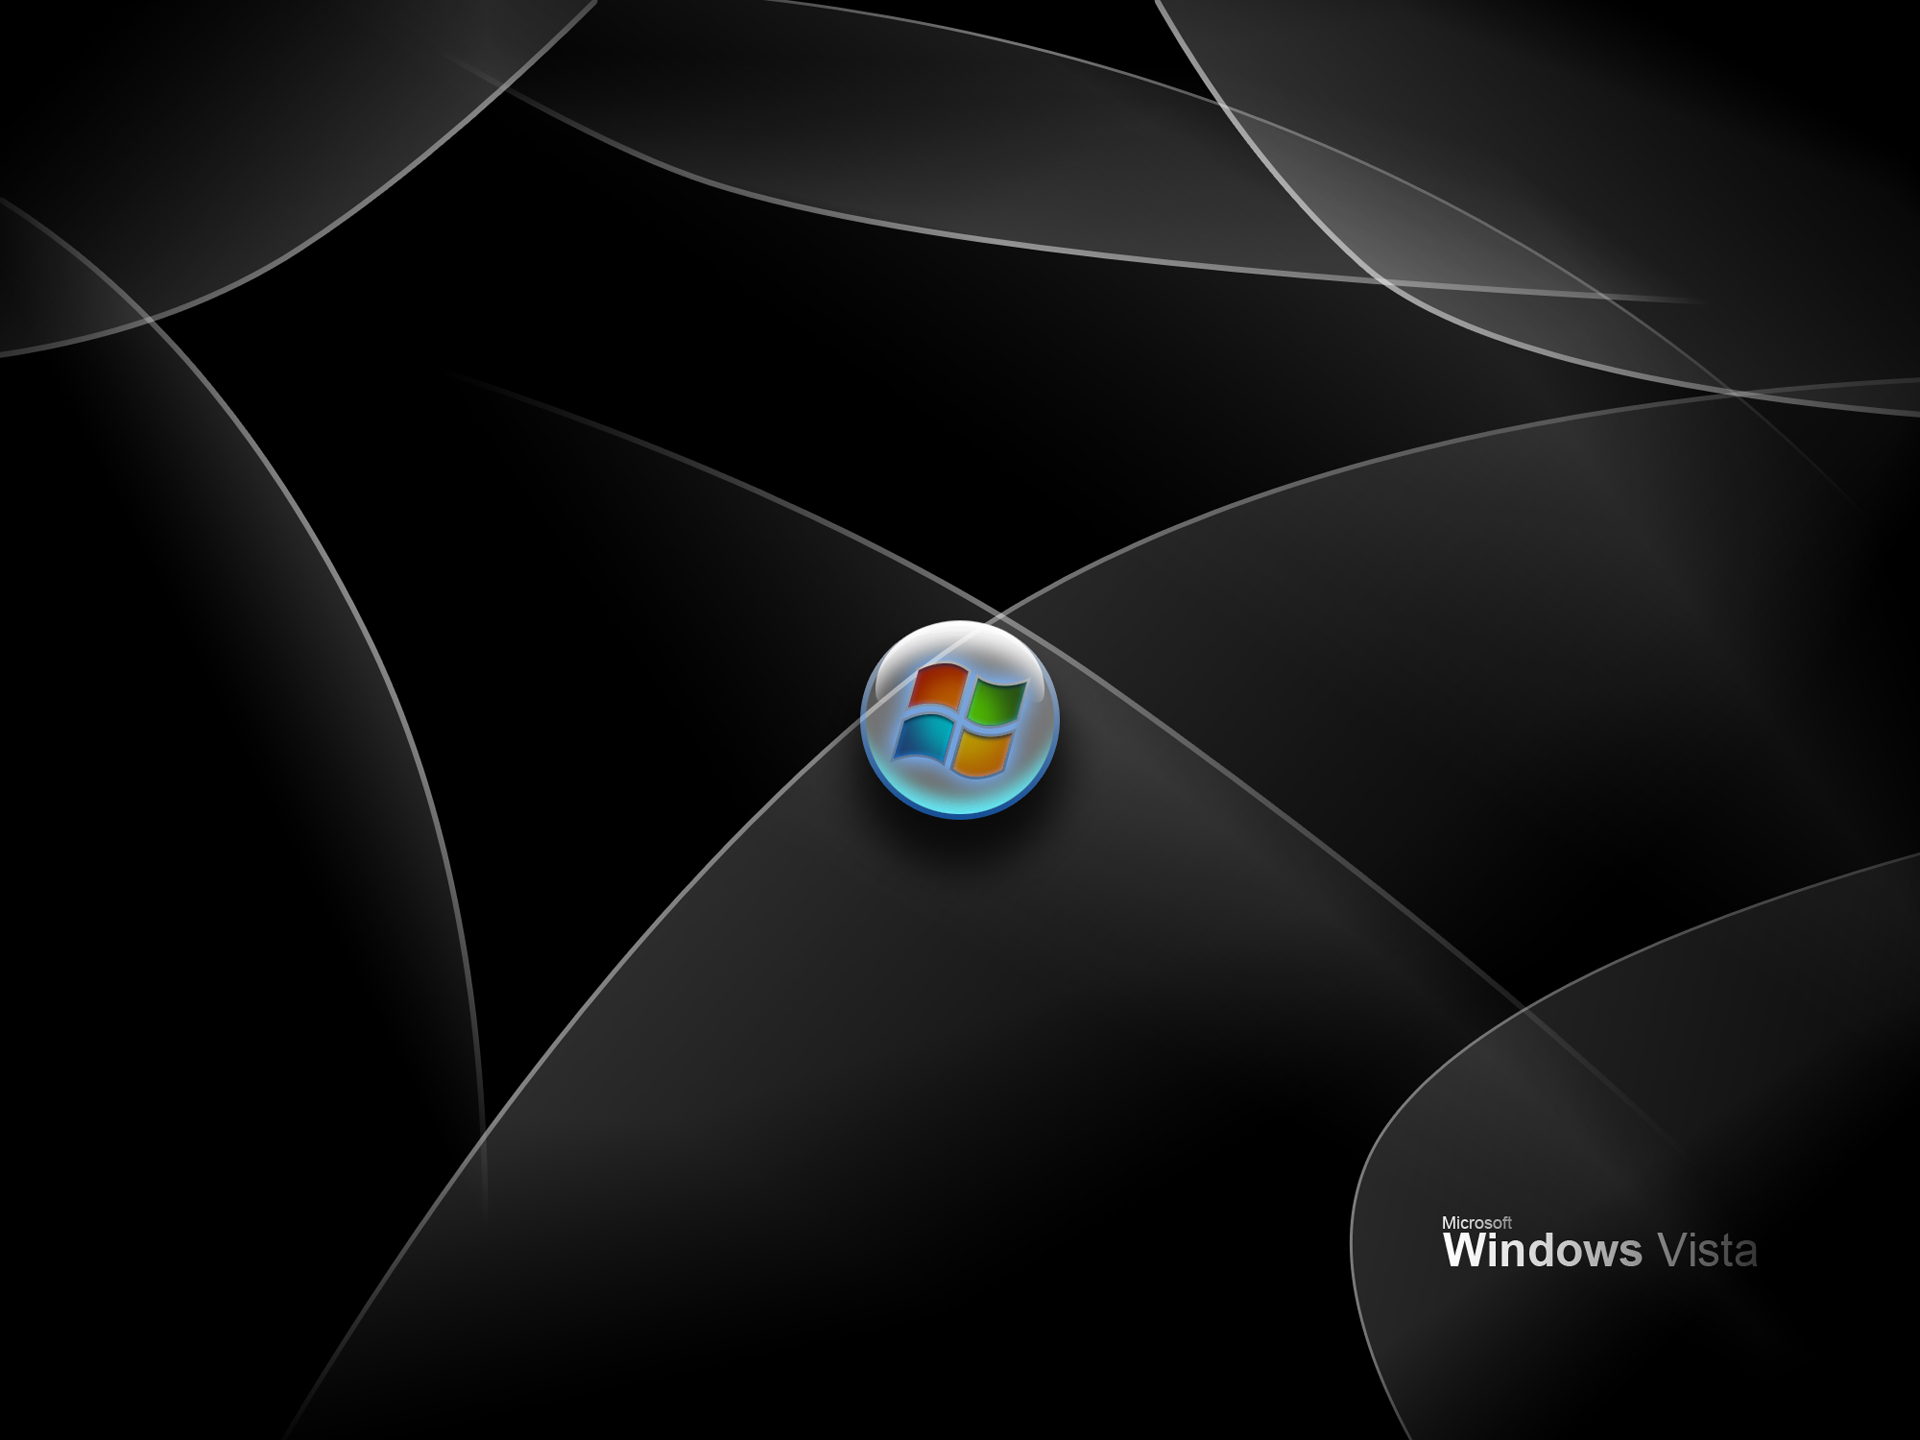 Microsoft Windows Vista Balck Backround With White Designs desktop